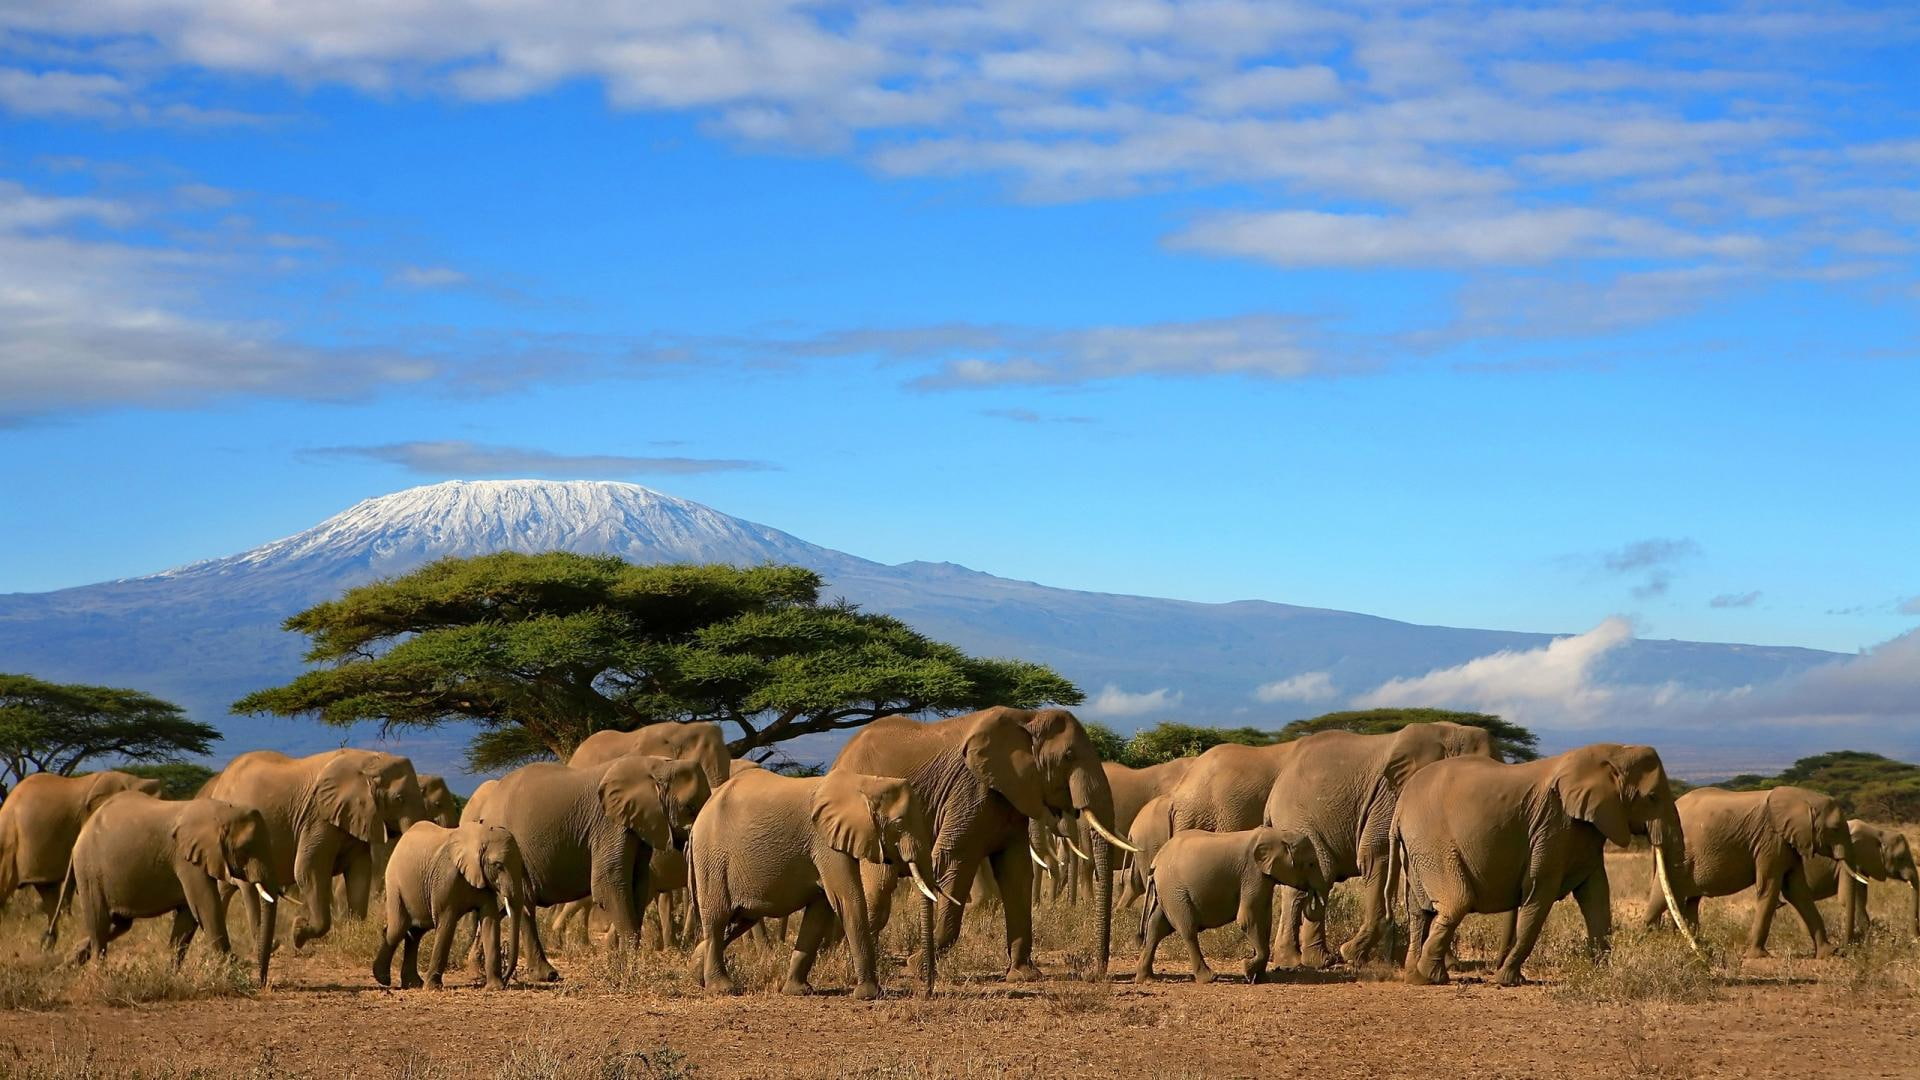 Gorgeous Herd Of Elephants, wildlife, animals, deserts